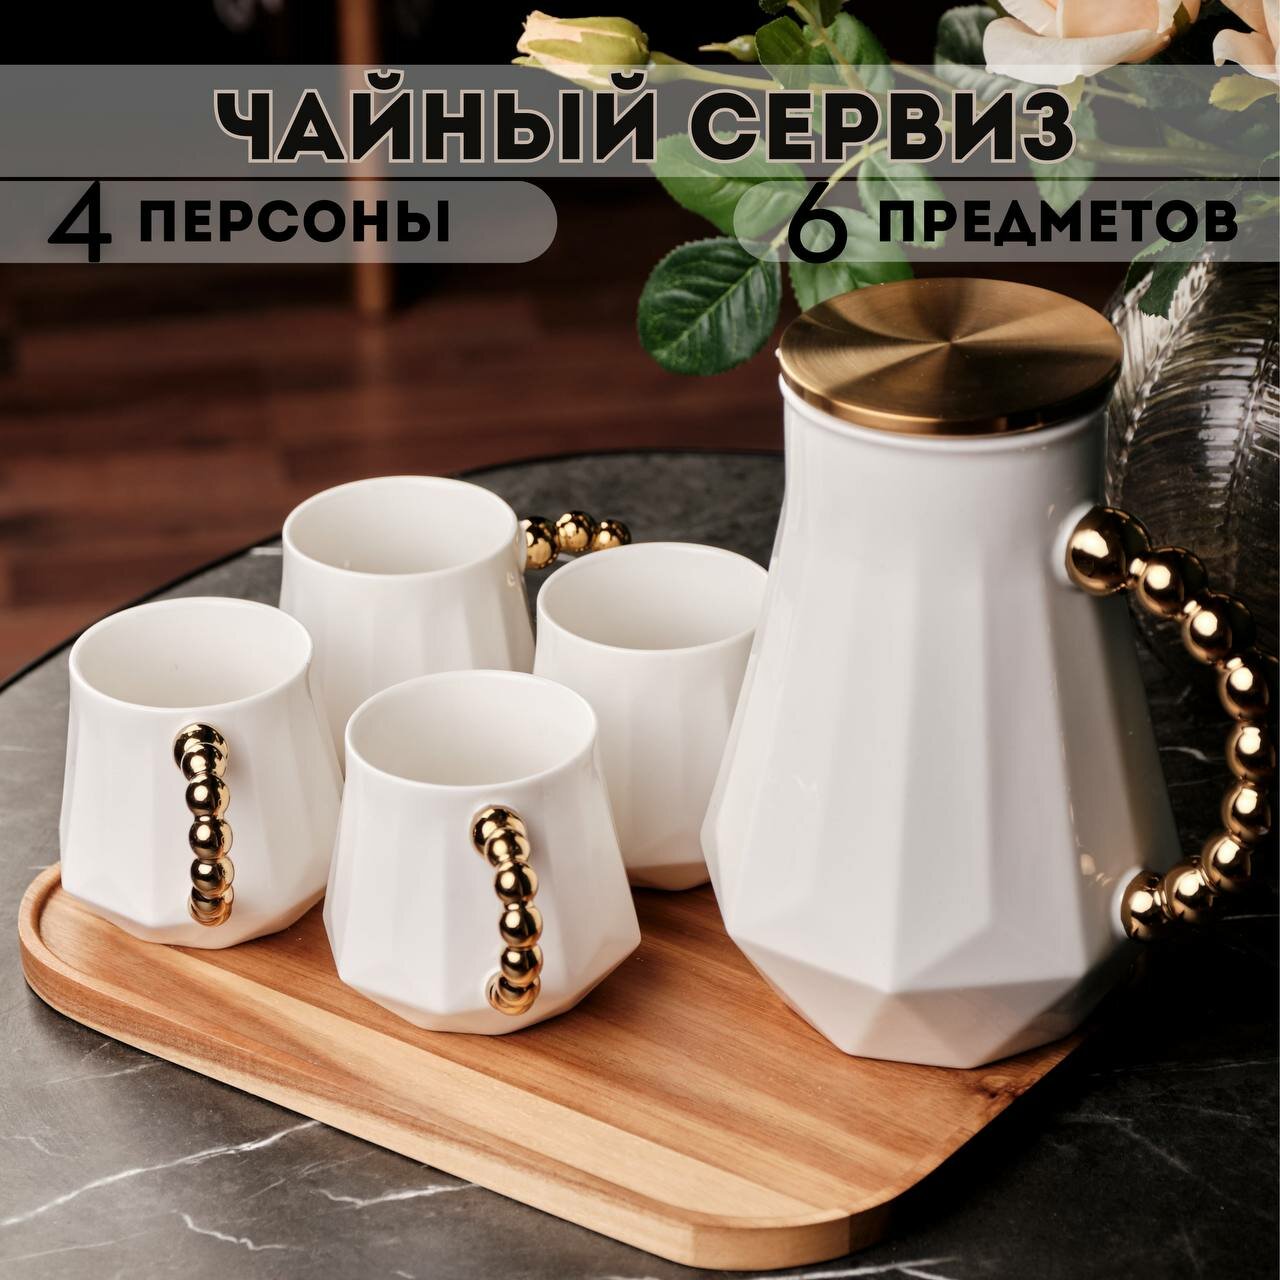 Сервиз чайный с чайником и подносом чайный набор 4 персоны 6 предметов белый керамика